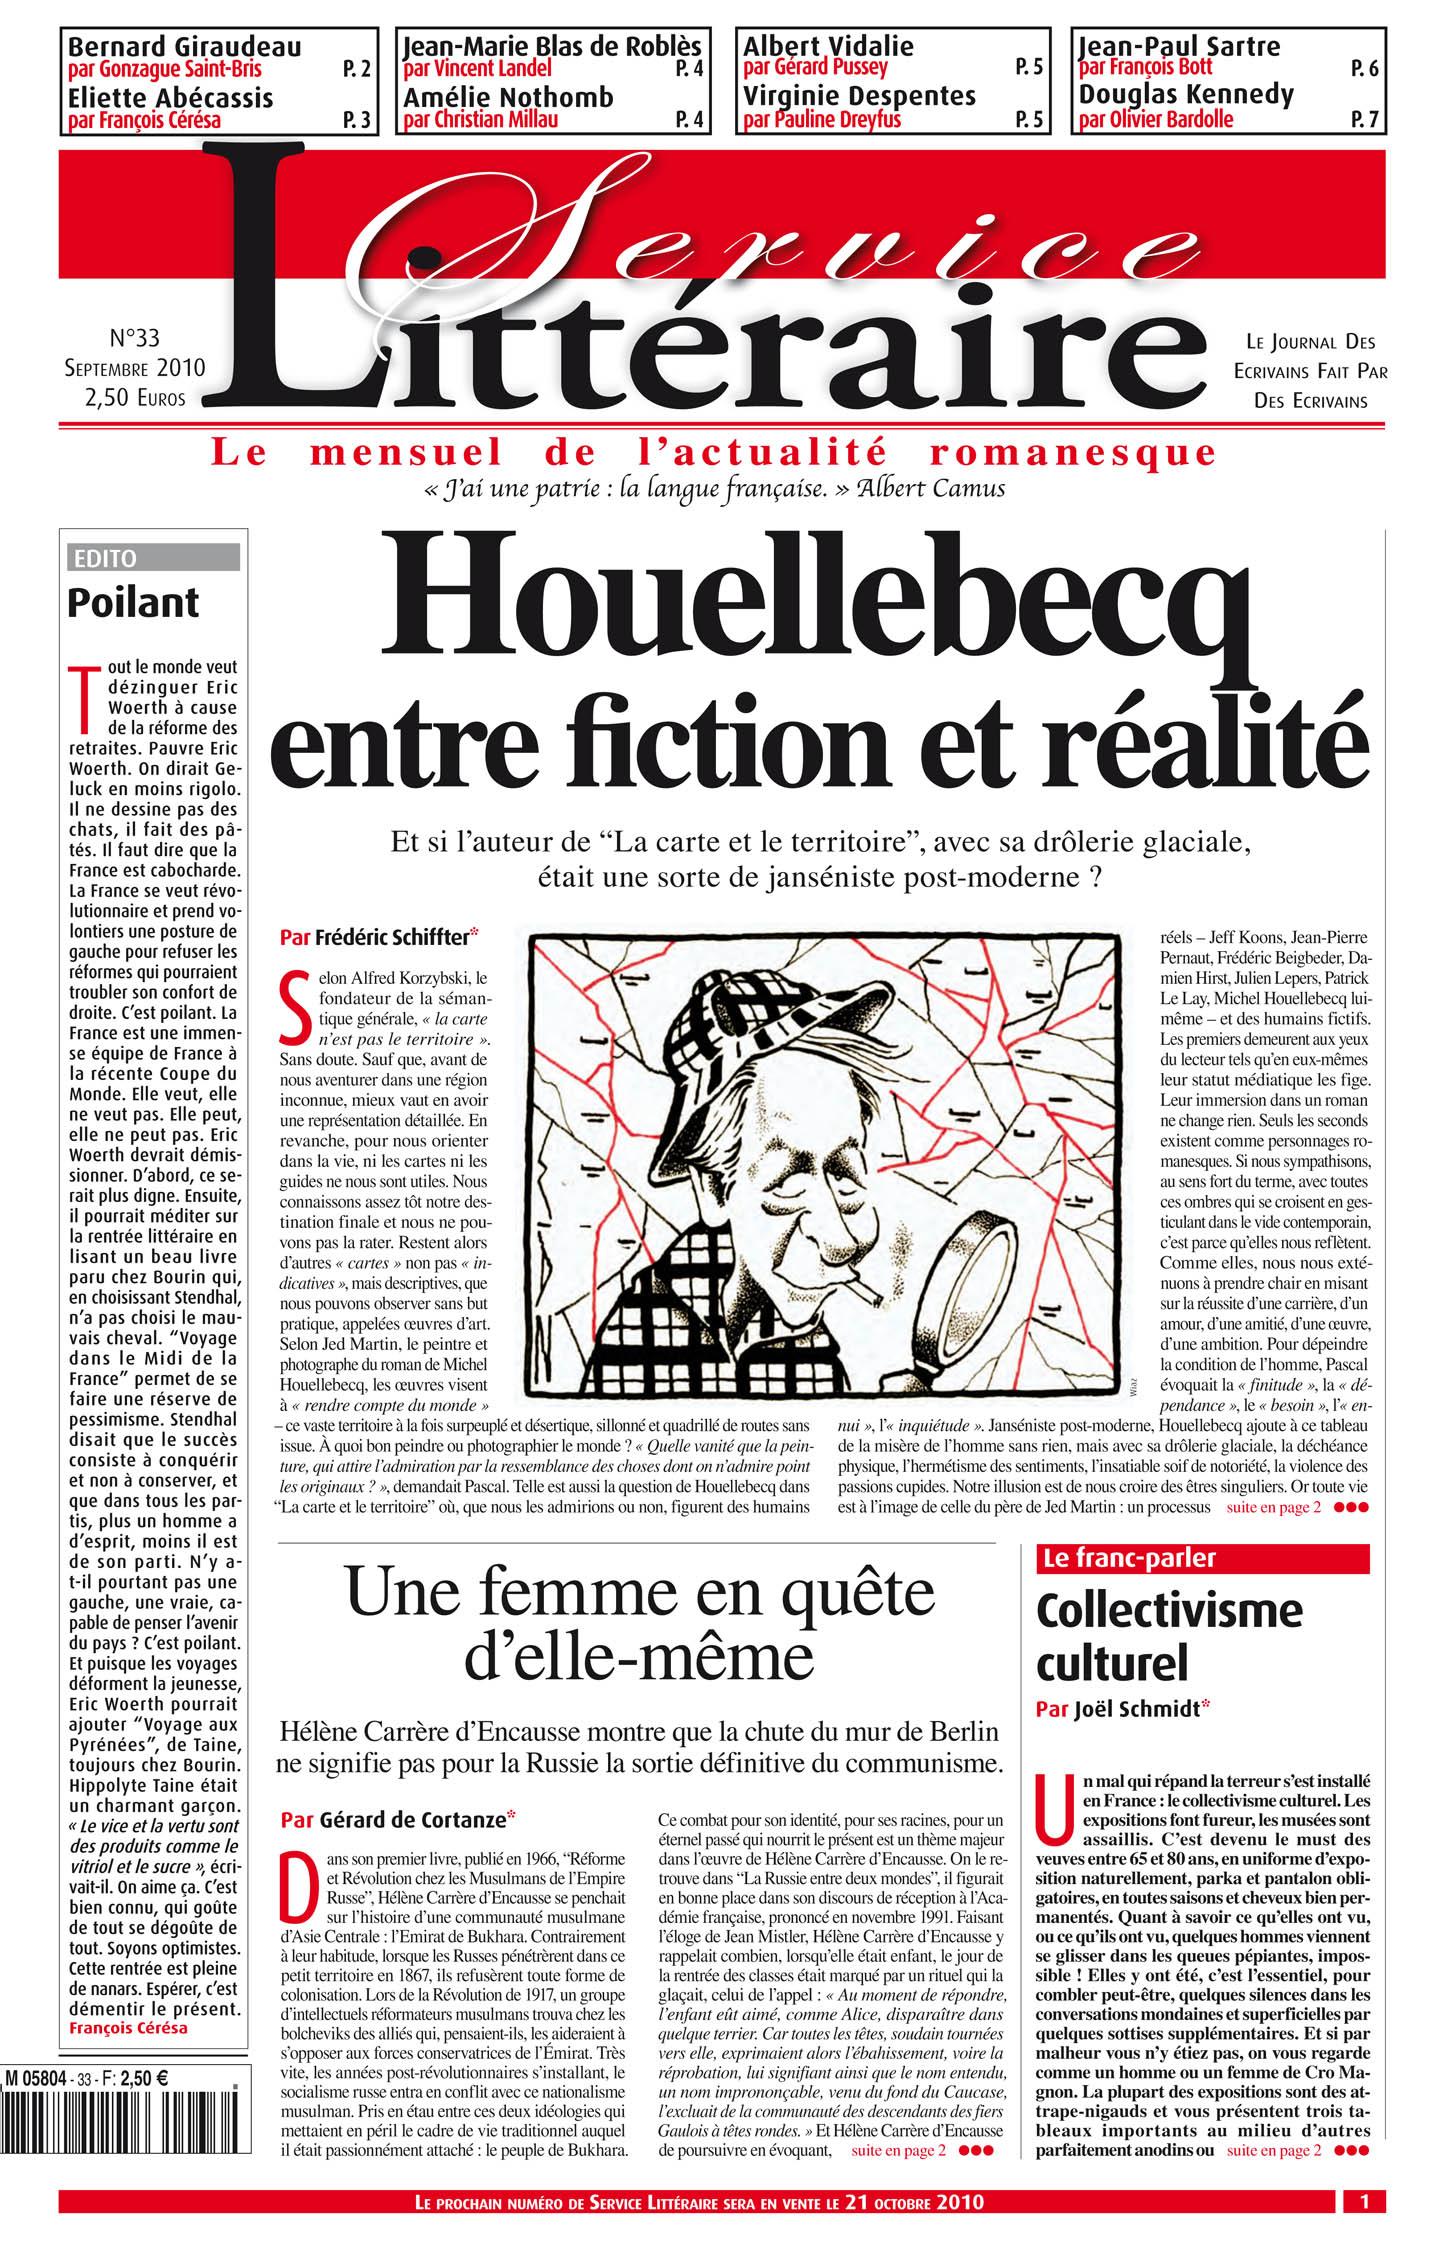 Houellebecq entre fiction et réalité